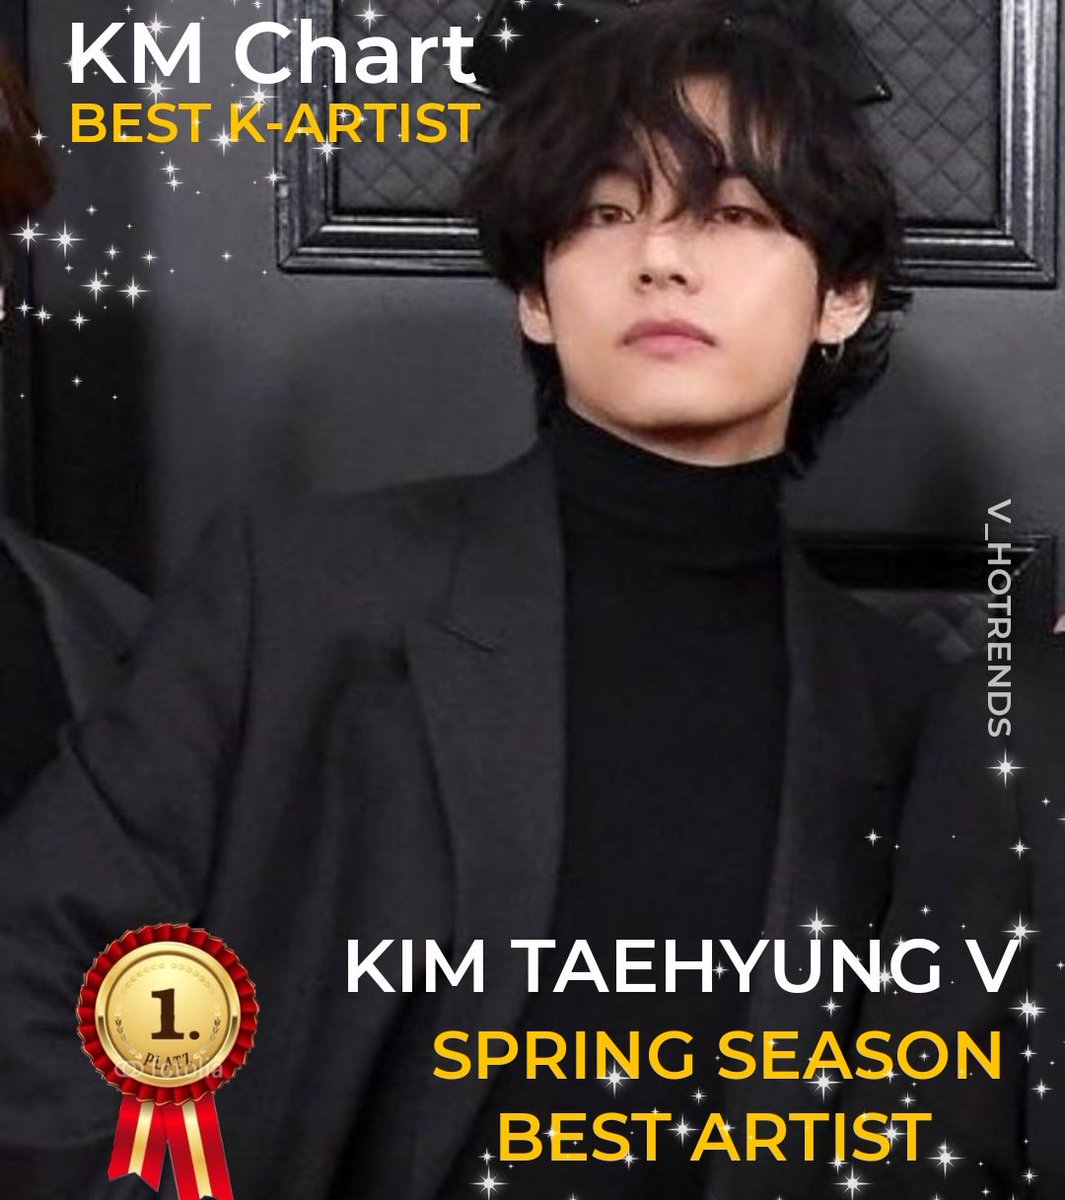 Kim Taehyung #V won Spring Best Season Best Artist winner by K-Music on KM CHART CONGRATULATIONS TAEHYUNG SPRING SEASON BEST ARTIST V #SpringSeason_BestArtist_V